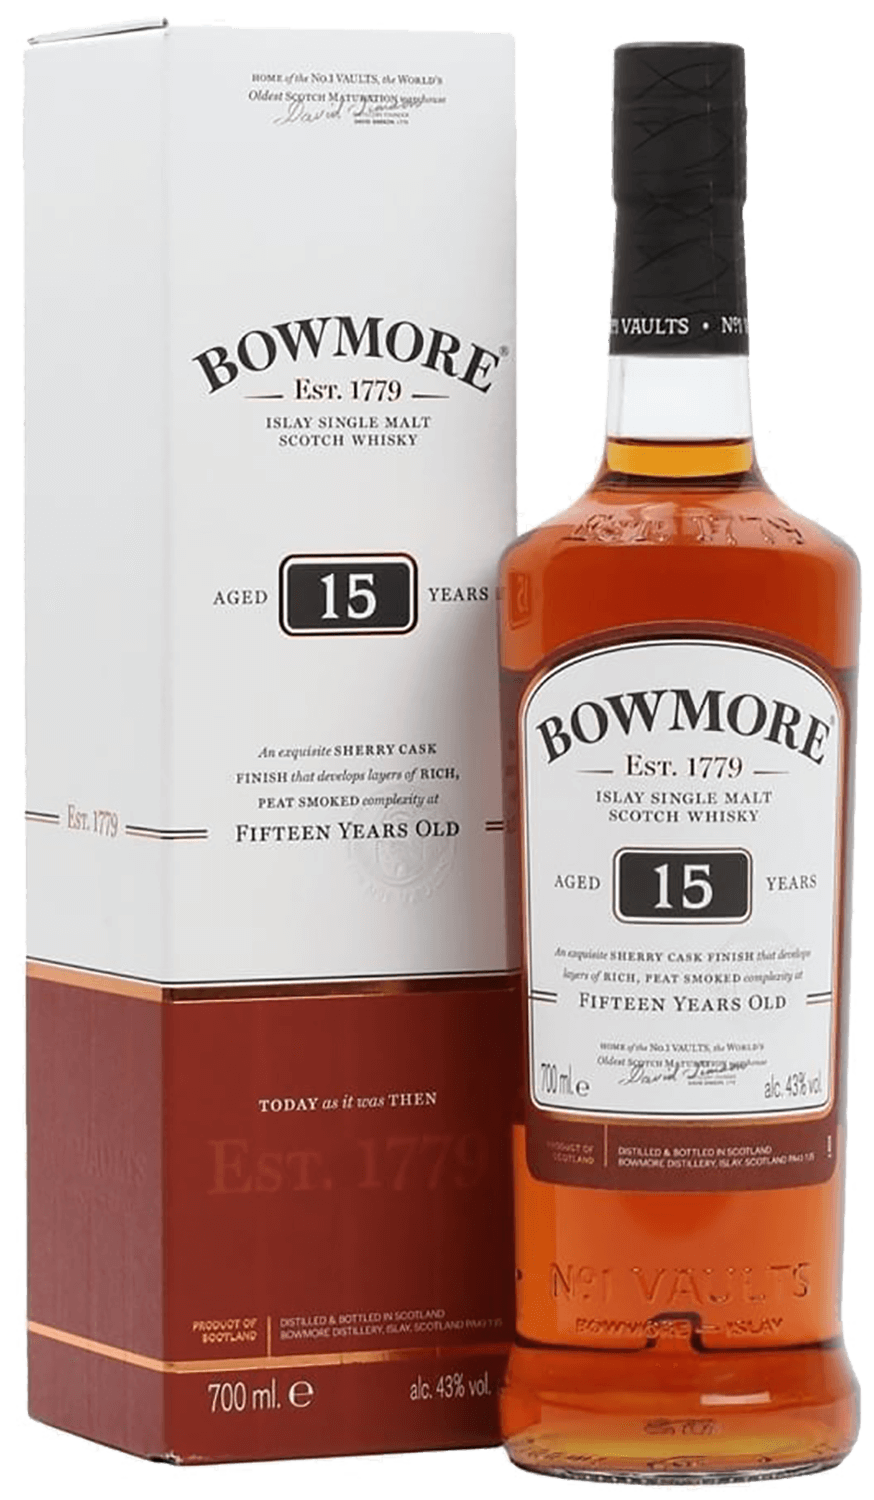 Bowmore 15 y.o. Islay single malt scotch whisky (gift box) ardbeg drum islay single malt scotch whisky gift box